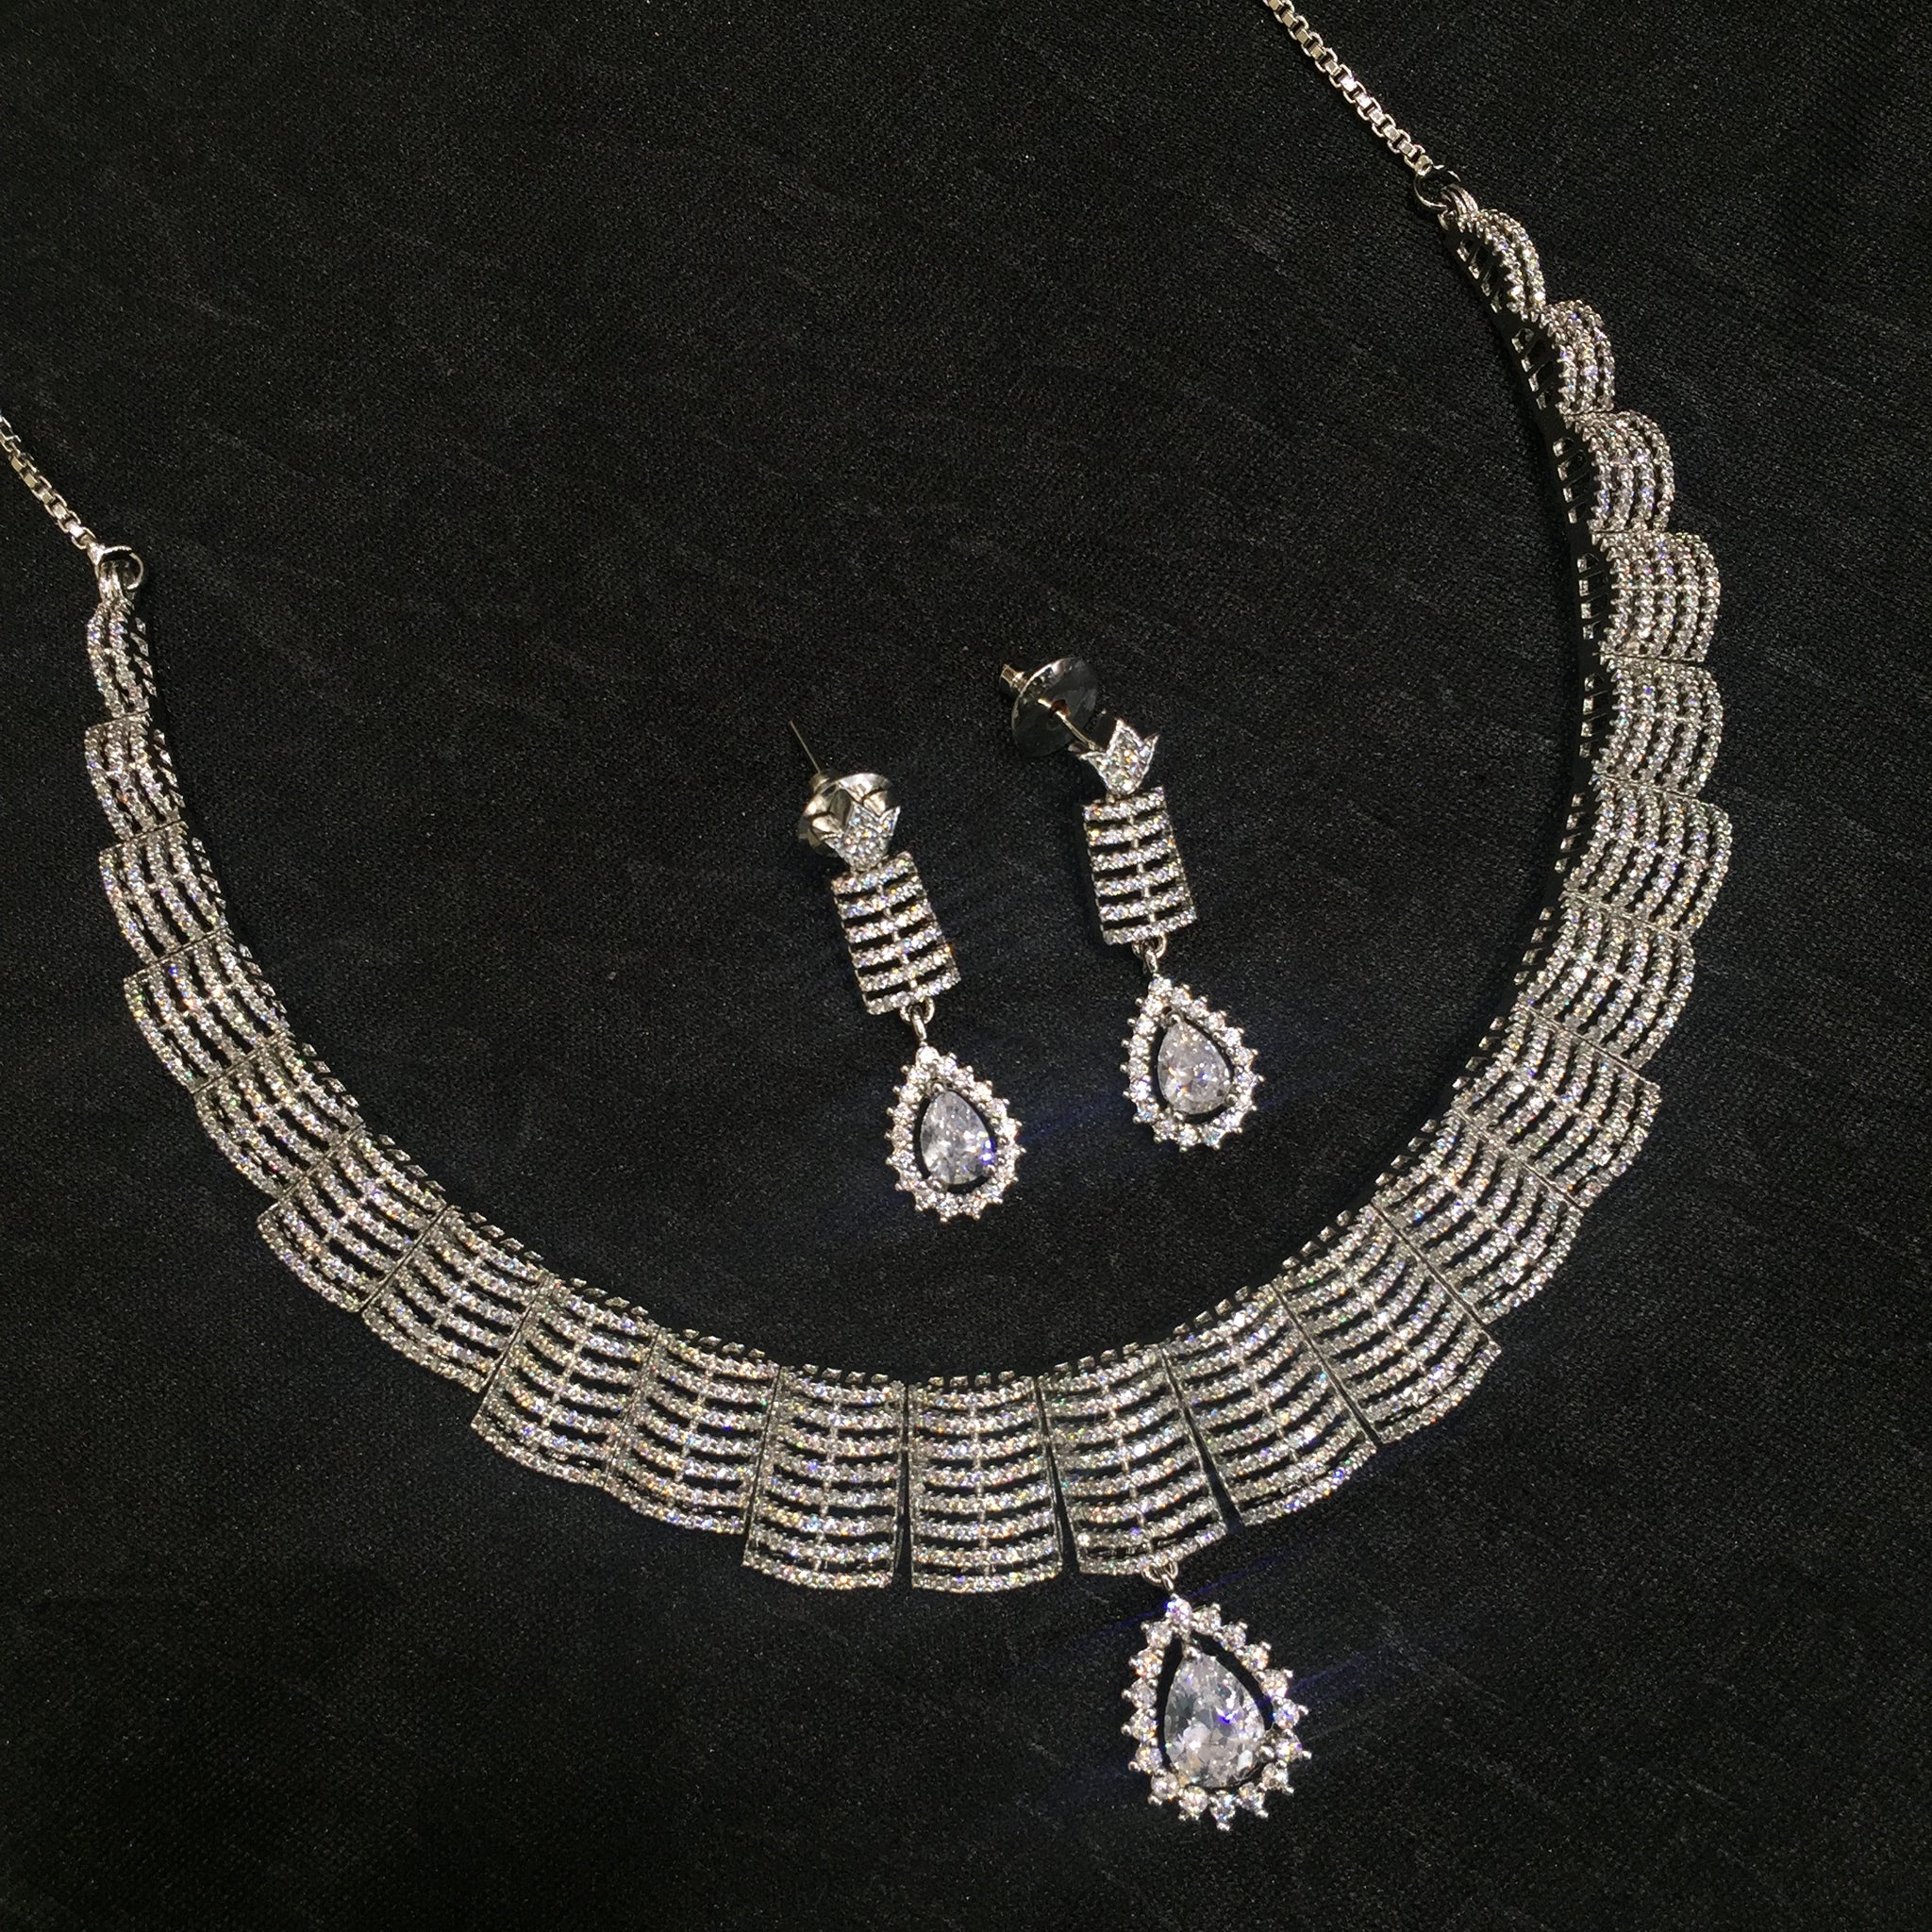 Round Neck Zircon/AD Necklace Set 6119-08 - Dazzles Jewellery